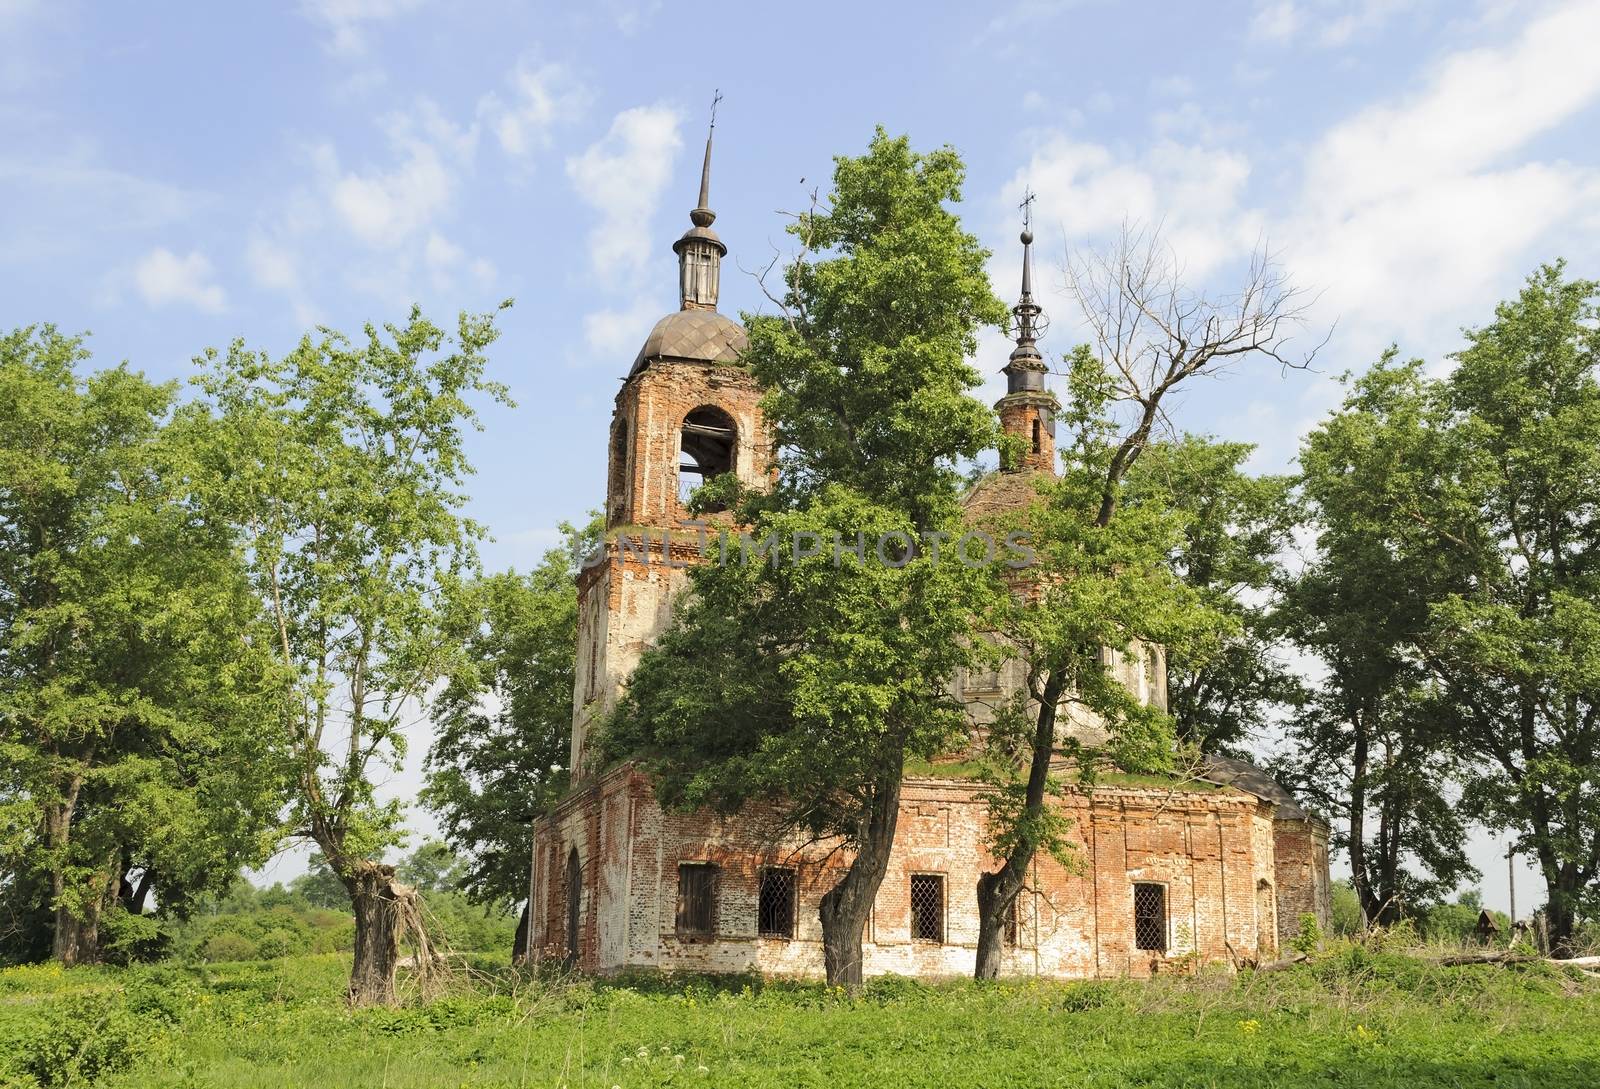 Destroyed Orthodox Church in Spasskoe village, Vladimir region, Russia